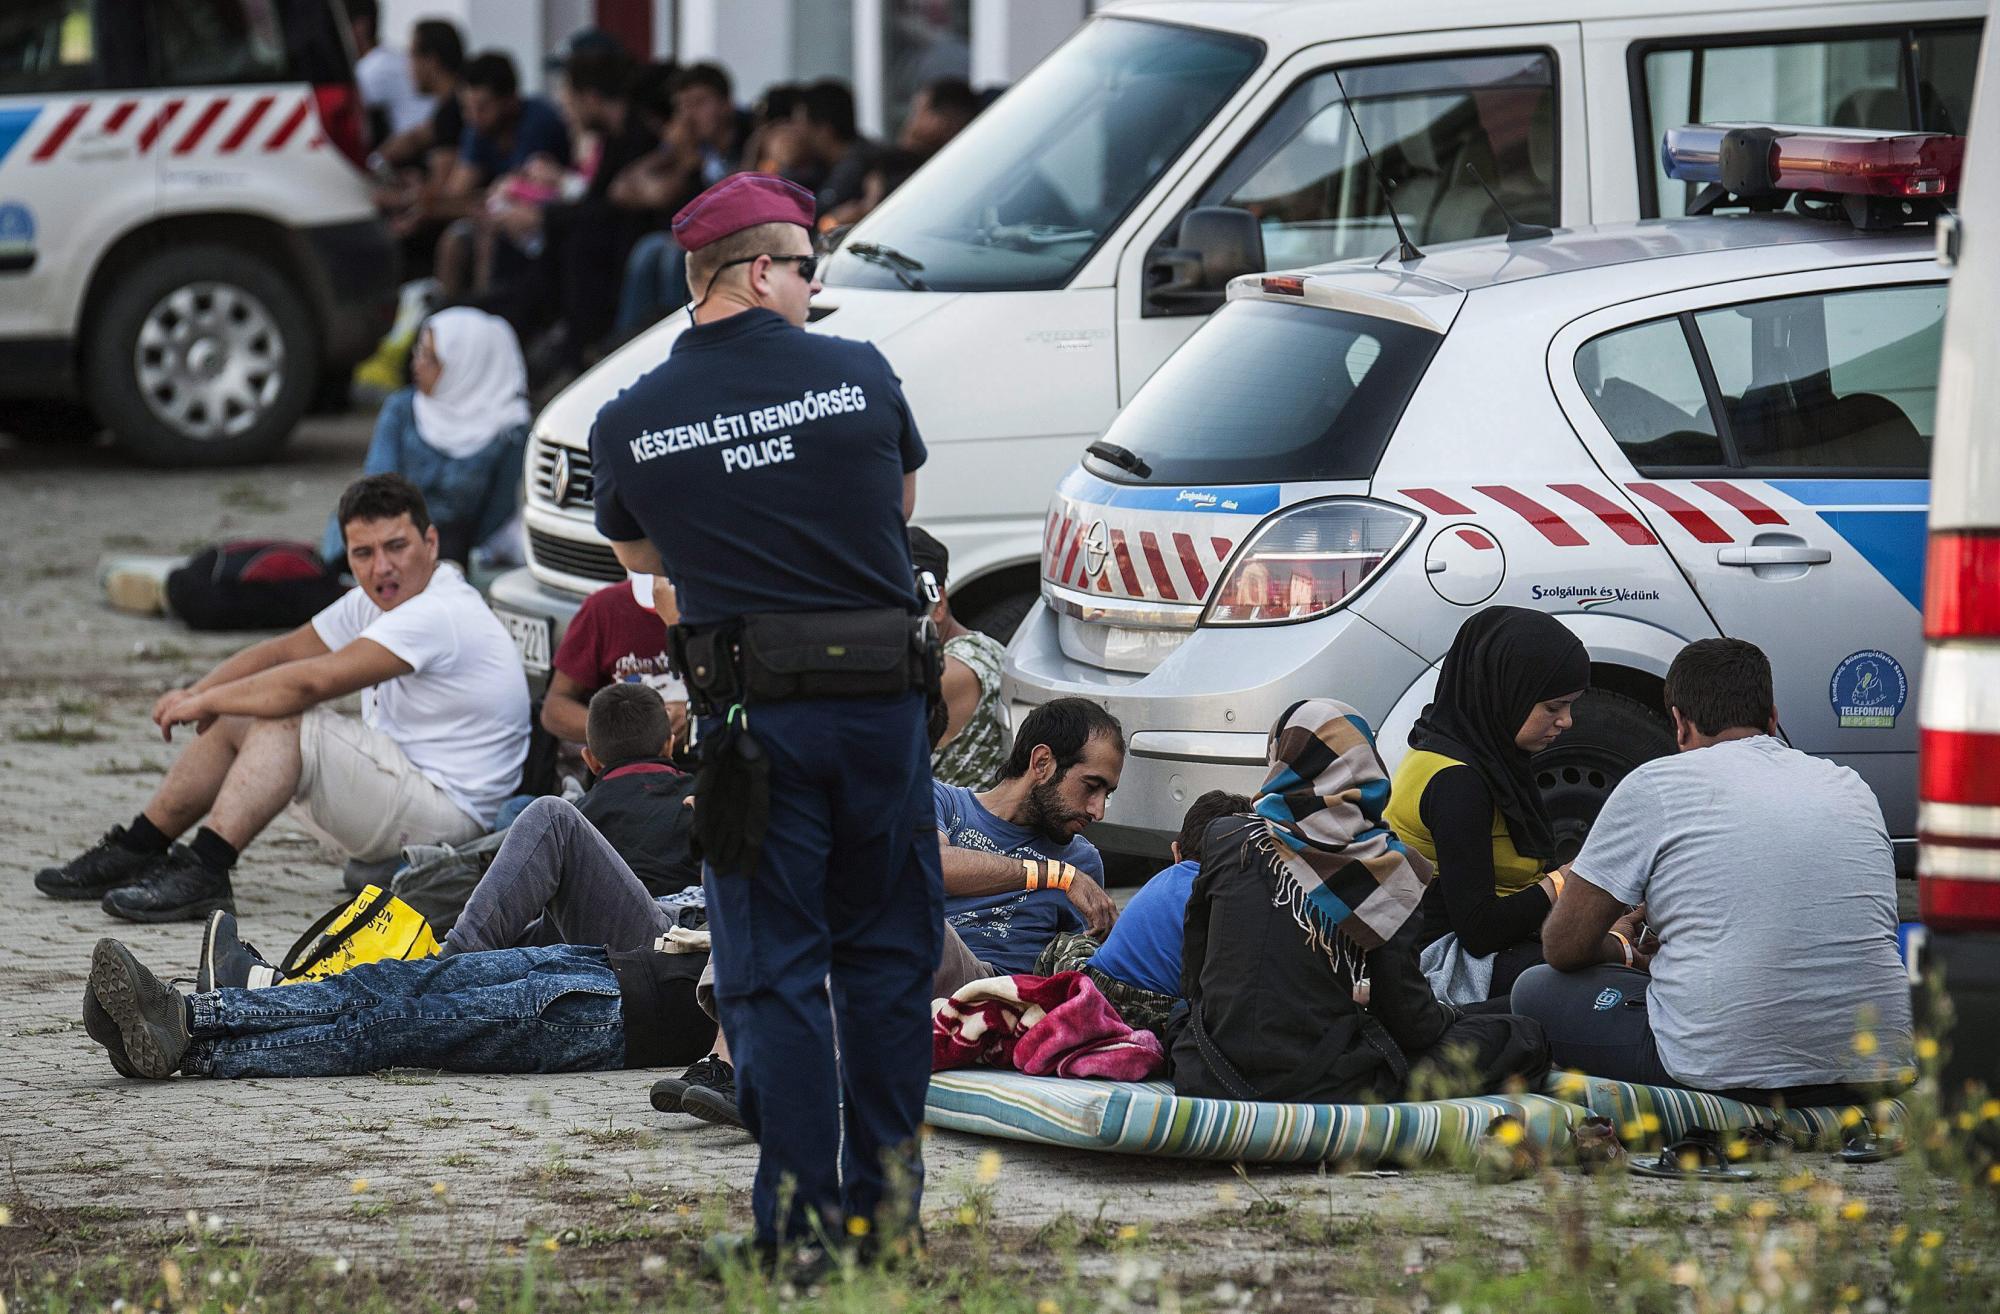 La Policía húngara interceptó el miércoles a 3.241 personas, entre ellos 700 menores, tras cruzar la frontera de manera ilegal desde Serbia, un número que supone un récord de entradas en el país en un solo día, informaron las fuerzas de seguridad. Este elevado número se debe a que los 7.000 refugiados que el pasado fin de semana pasaron desde Macedonia a Serbia han llegado ya a la frontera húngara.